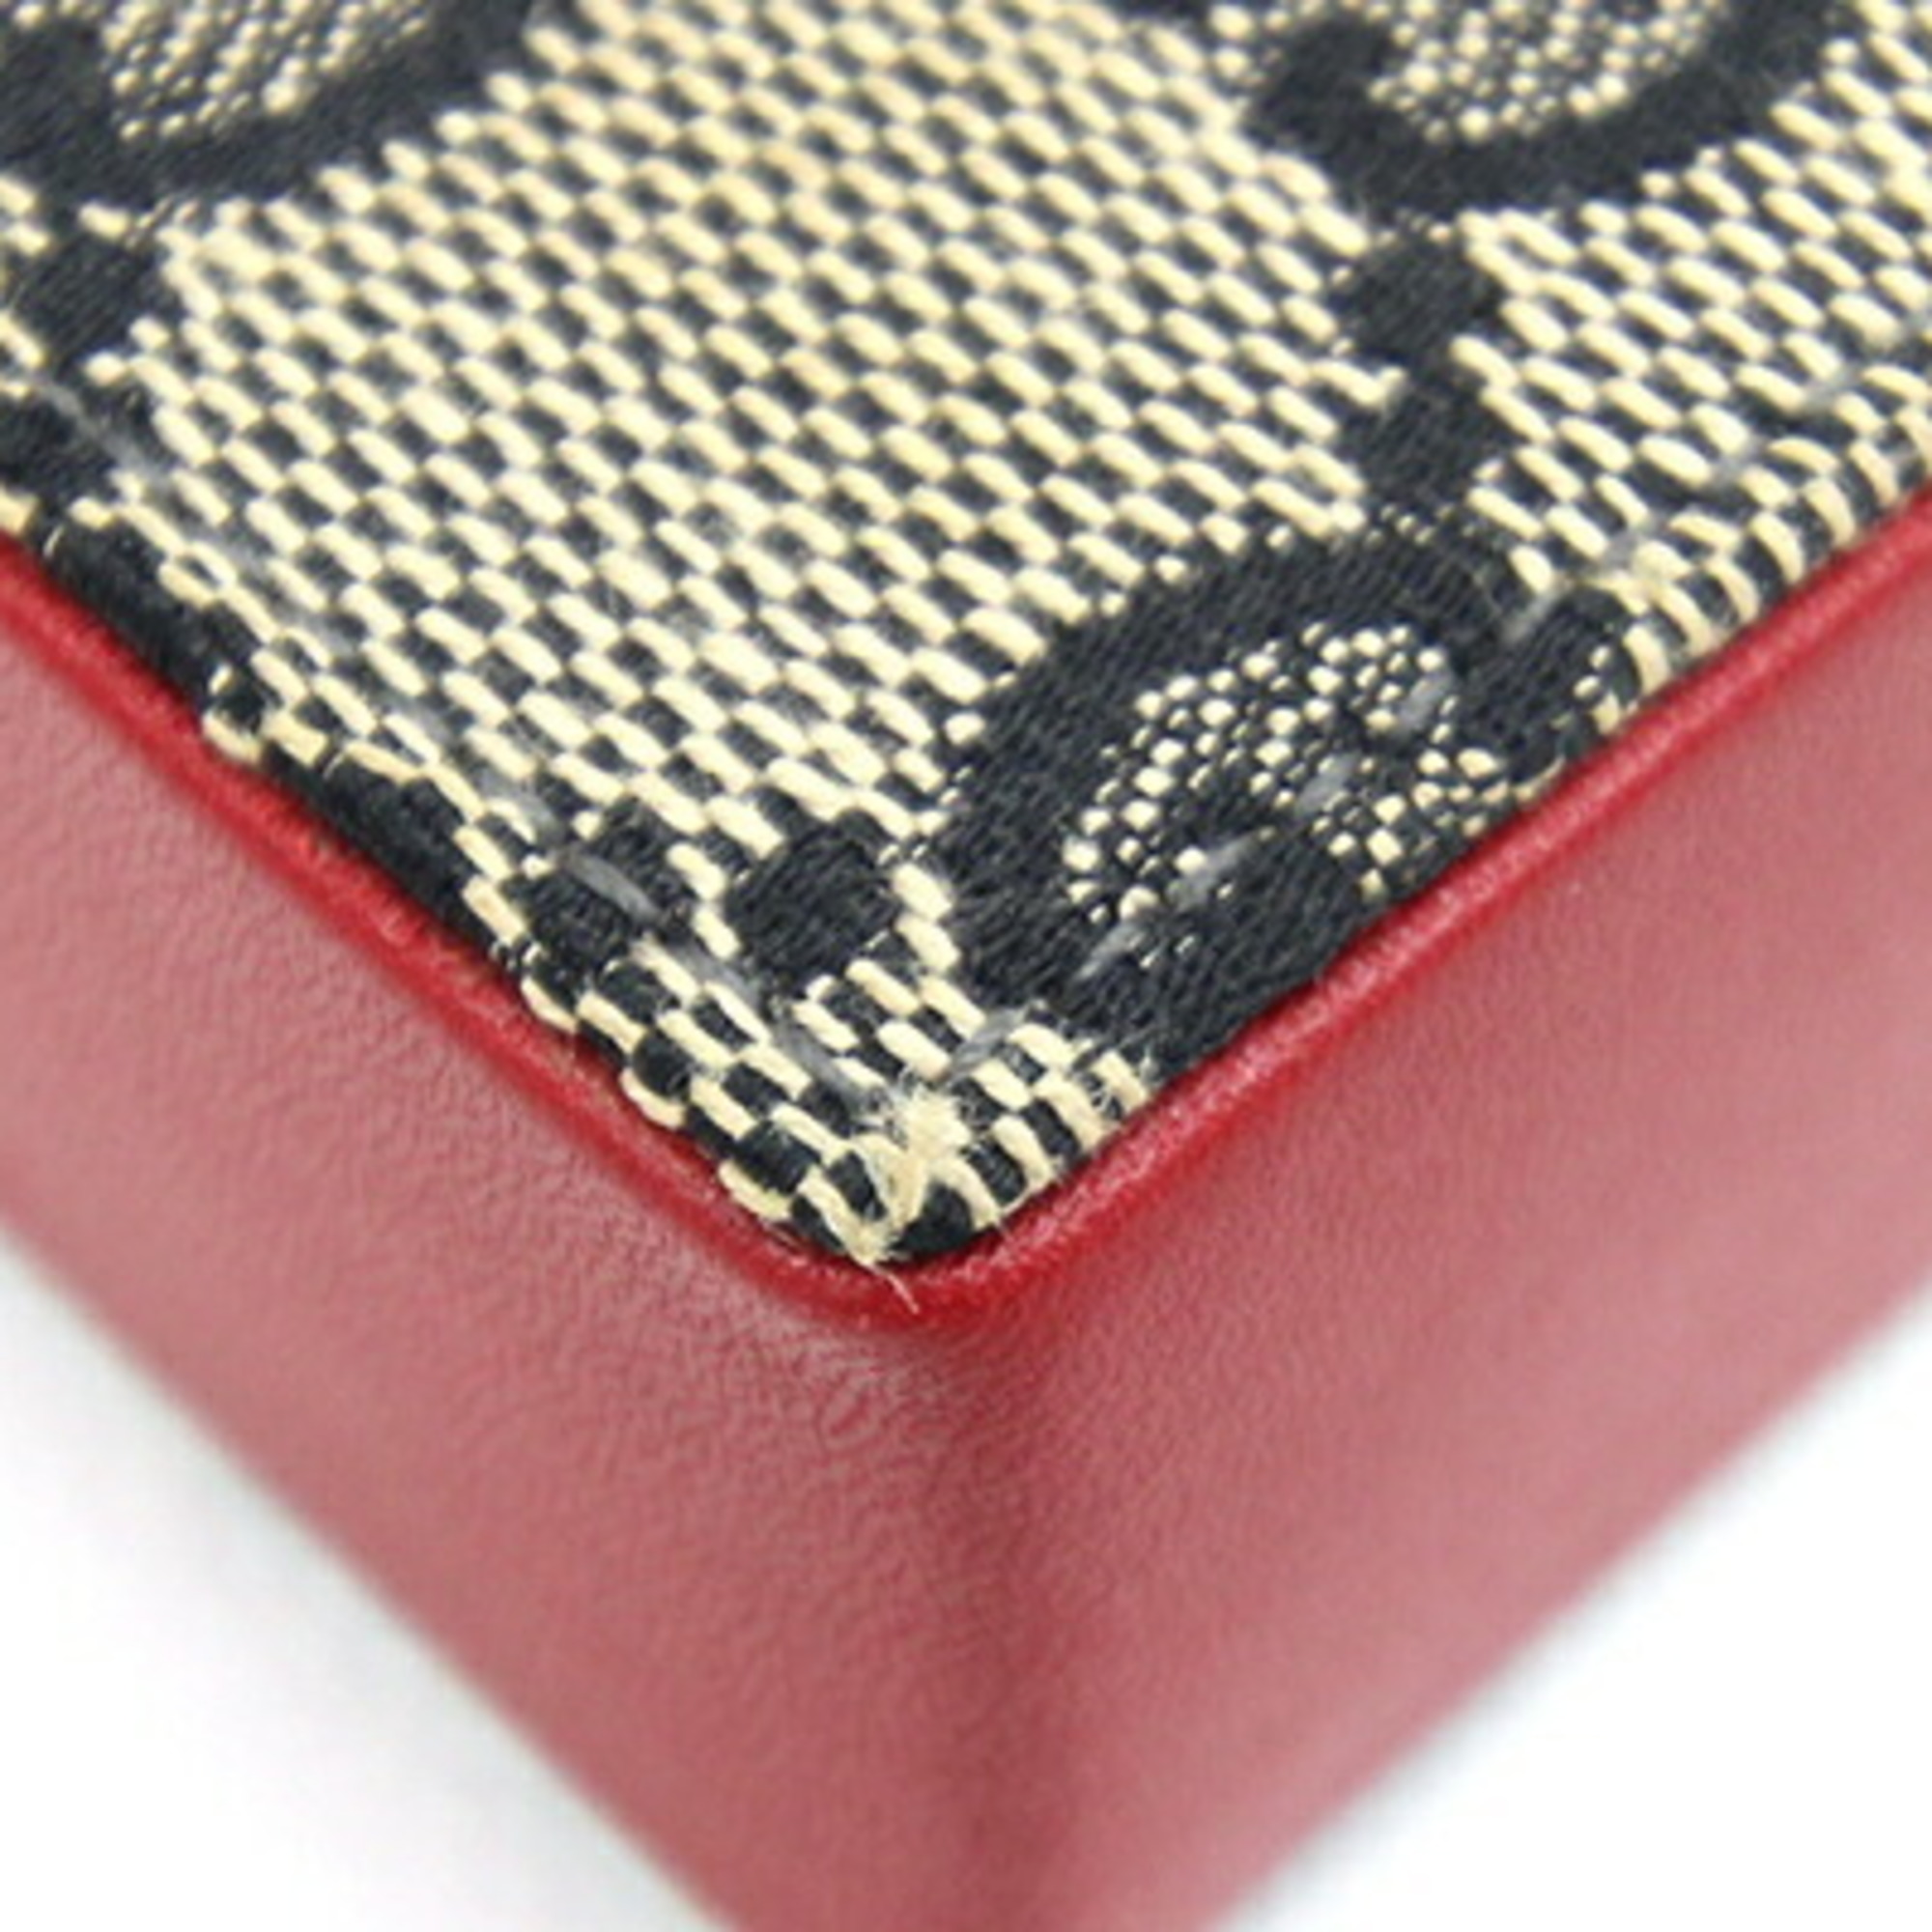 Gucci Cigarette Case 123033 Red Black Beige Leather Canvas GUCCI